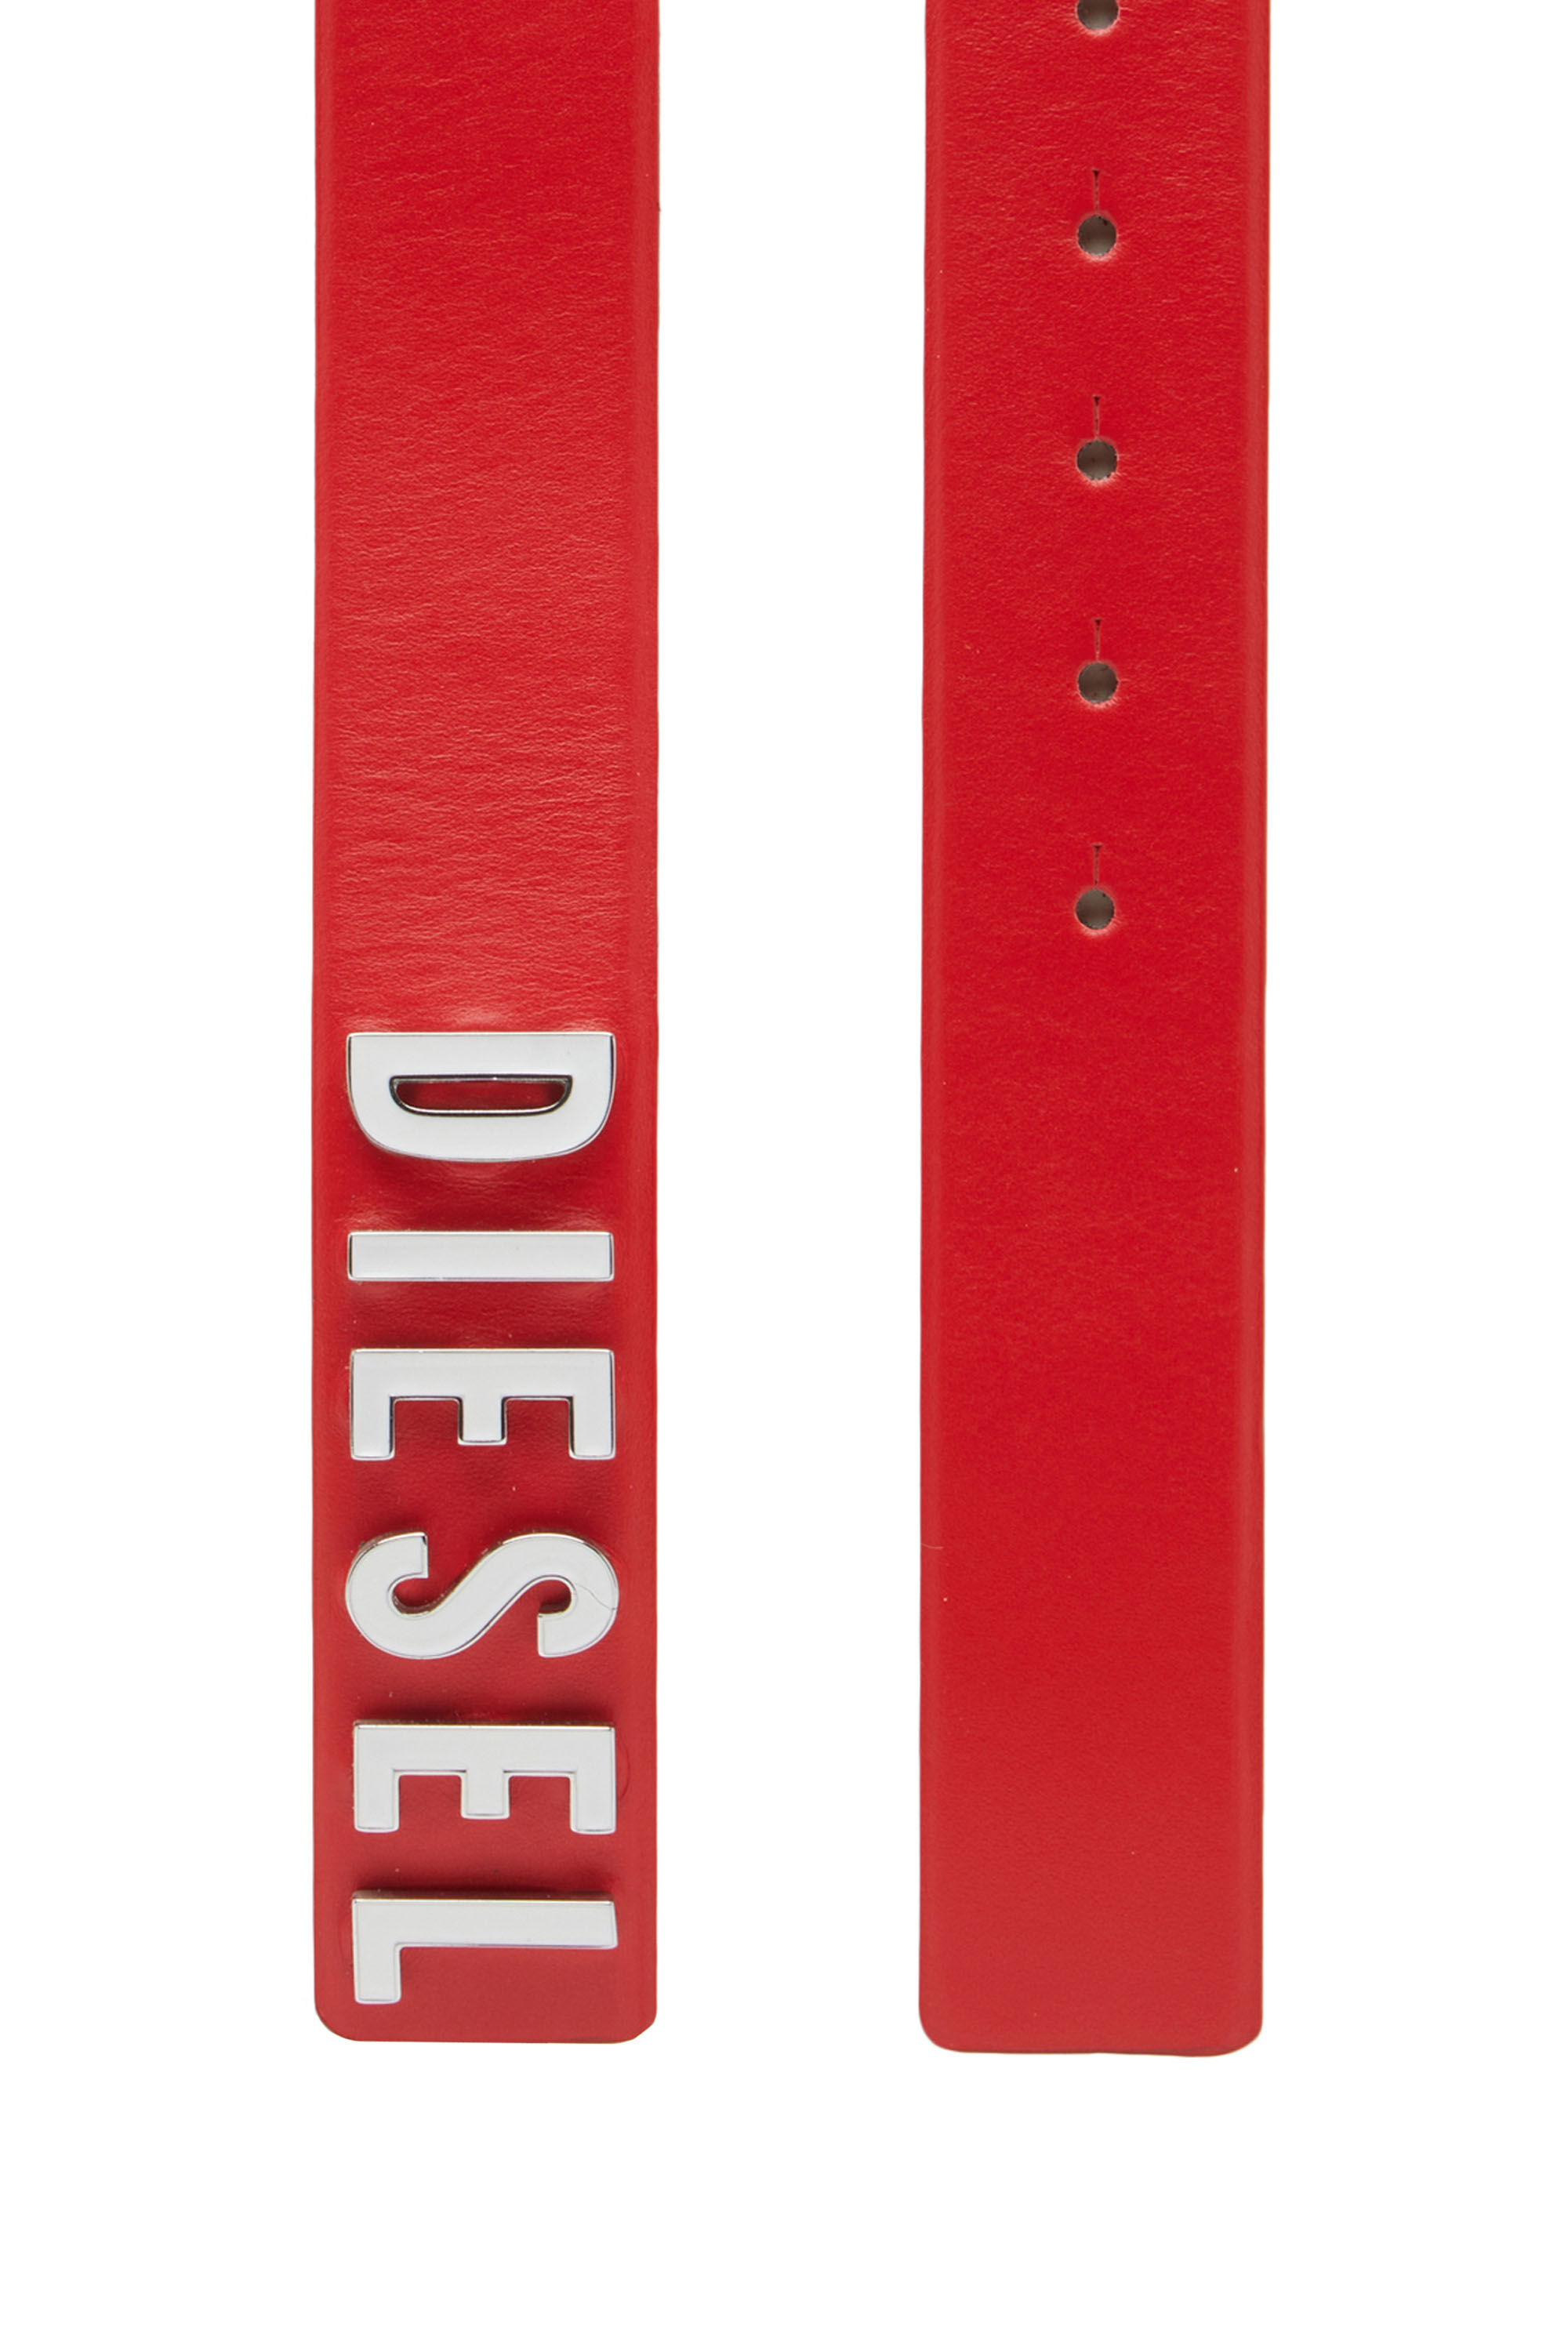 Diesel - B-LETTERS B, Rouge - Image 2